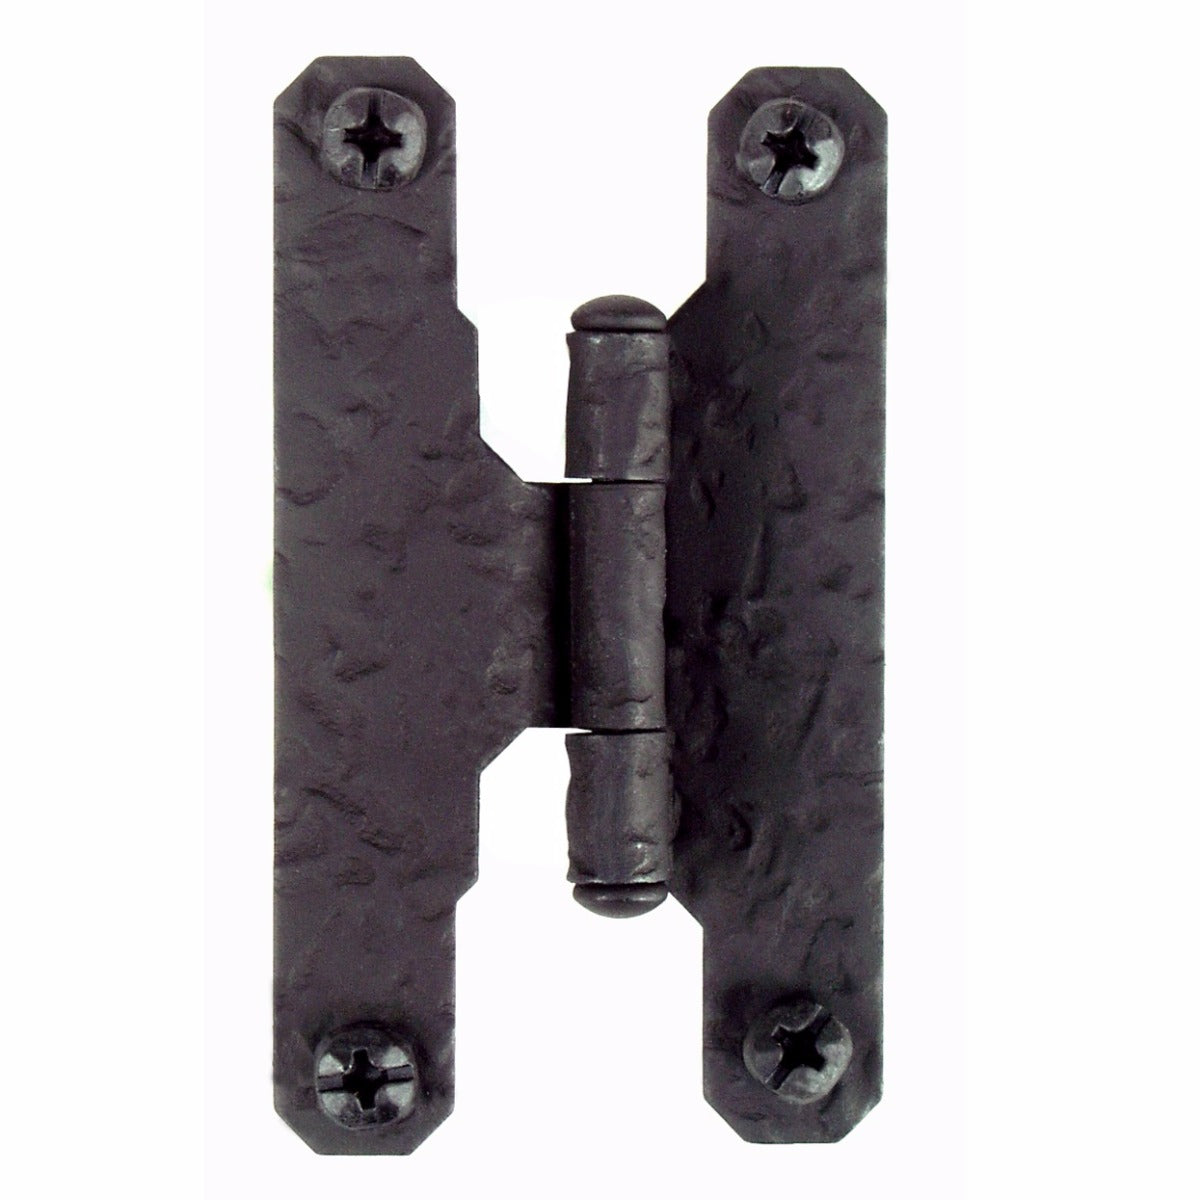 3/8" Offset "H" style Black Iron Hinge